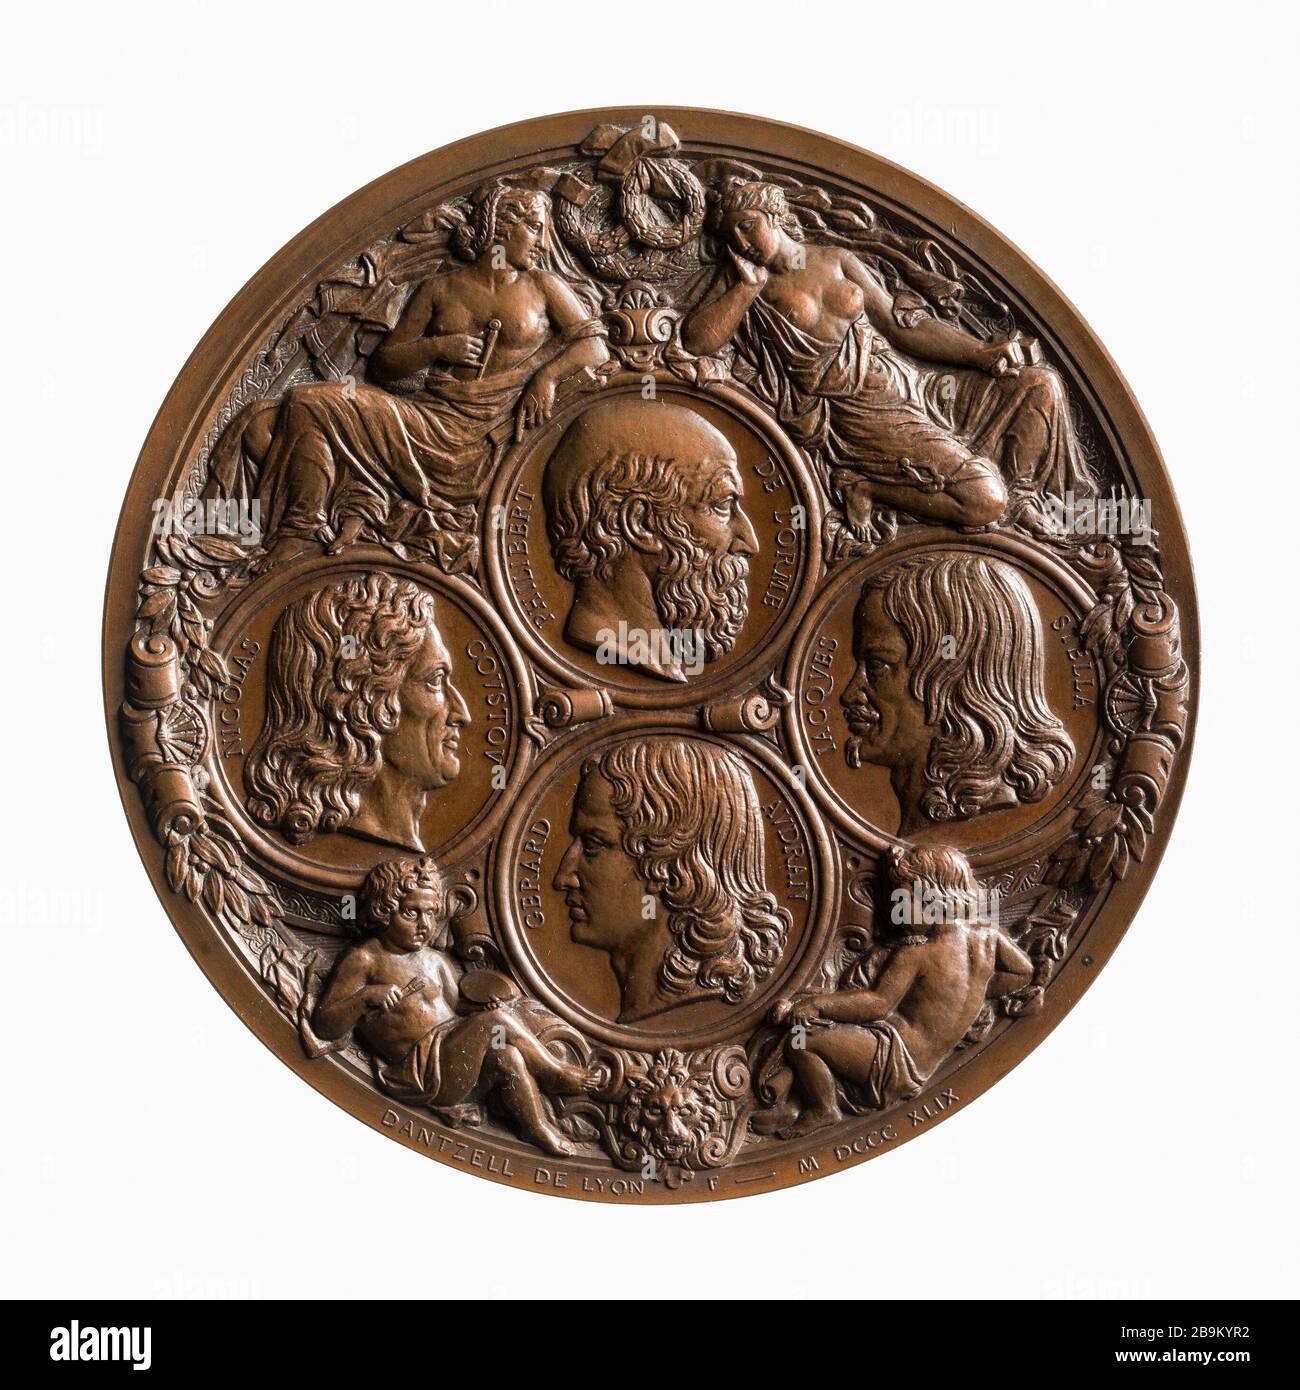 Medal of the Society of Friends of the Arts Lyon founded in 1836, 1849 Joseph Dantzell (1805-1877). Médaille de la Société des amis des arts de Lyon fondée en 1836. Bronze, 1849. Paris, musée Carnavalet. Stock Photo